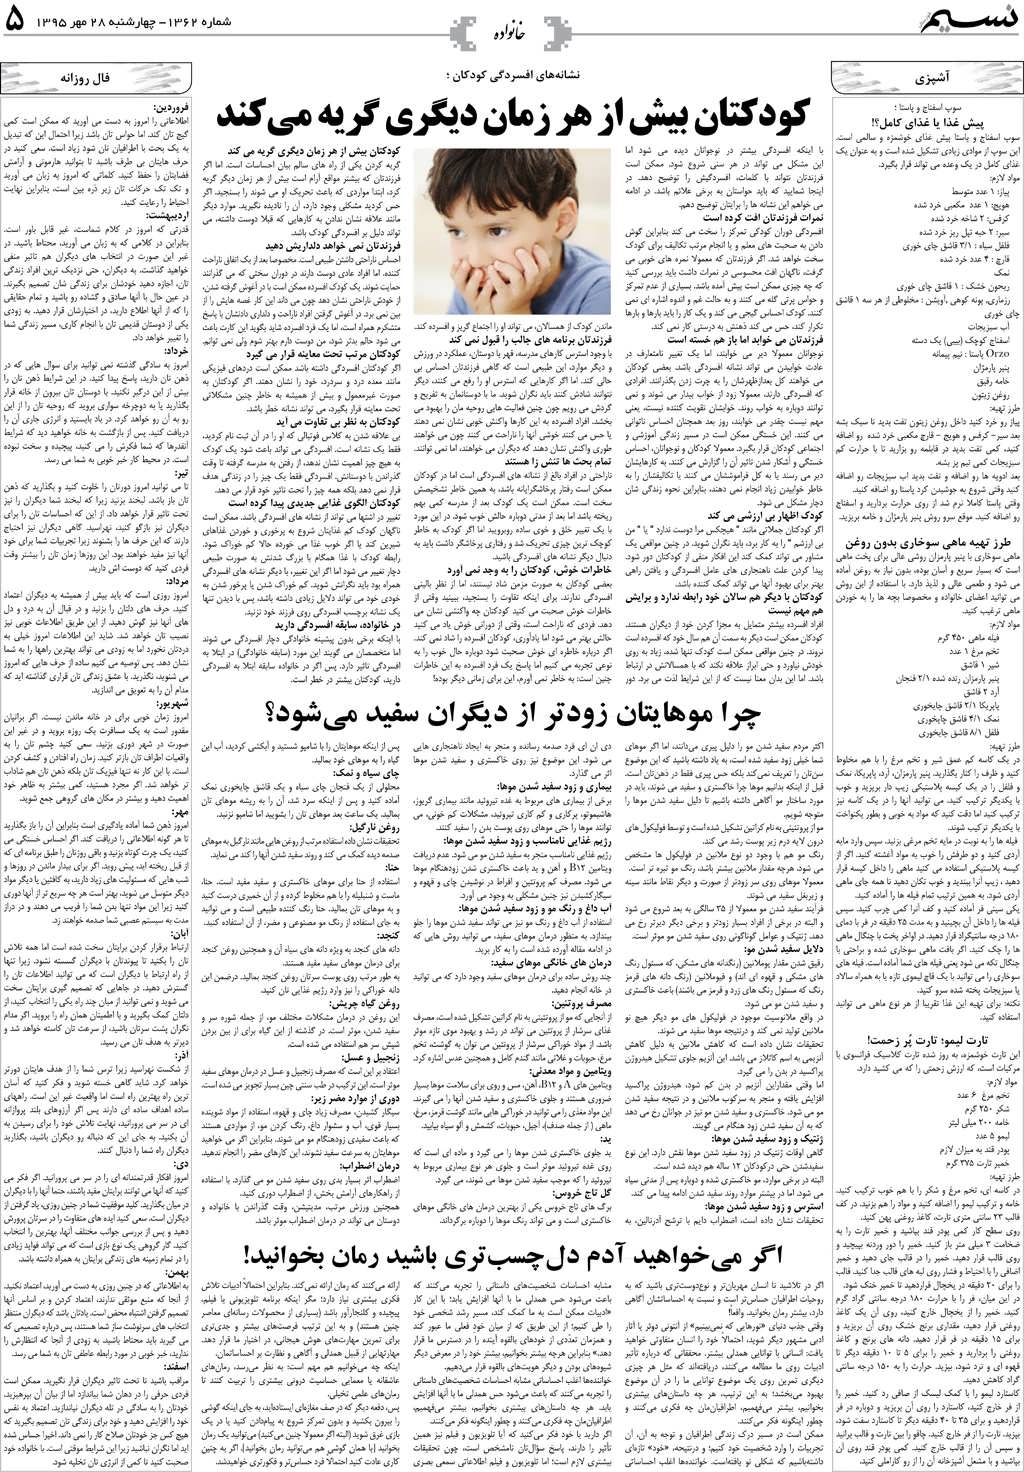 صفحه خانواده روزنامه نسیم شماره 1362